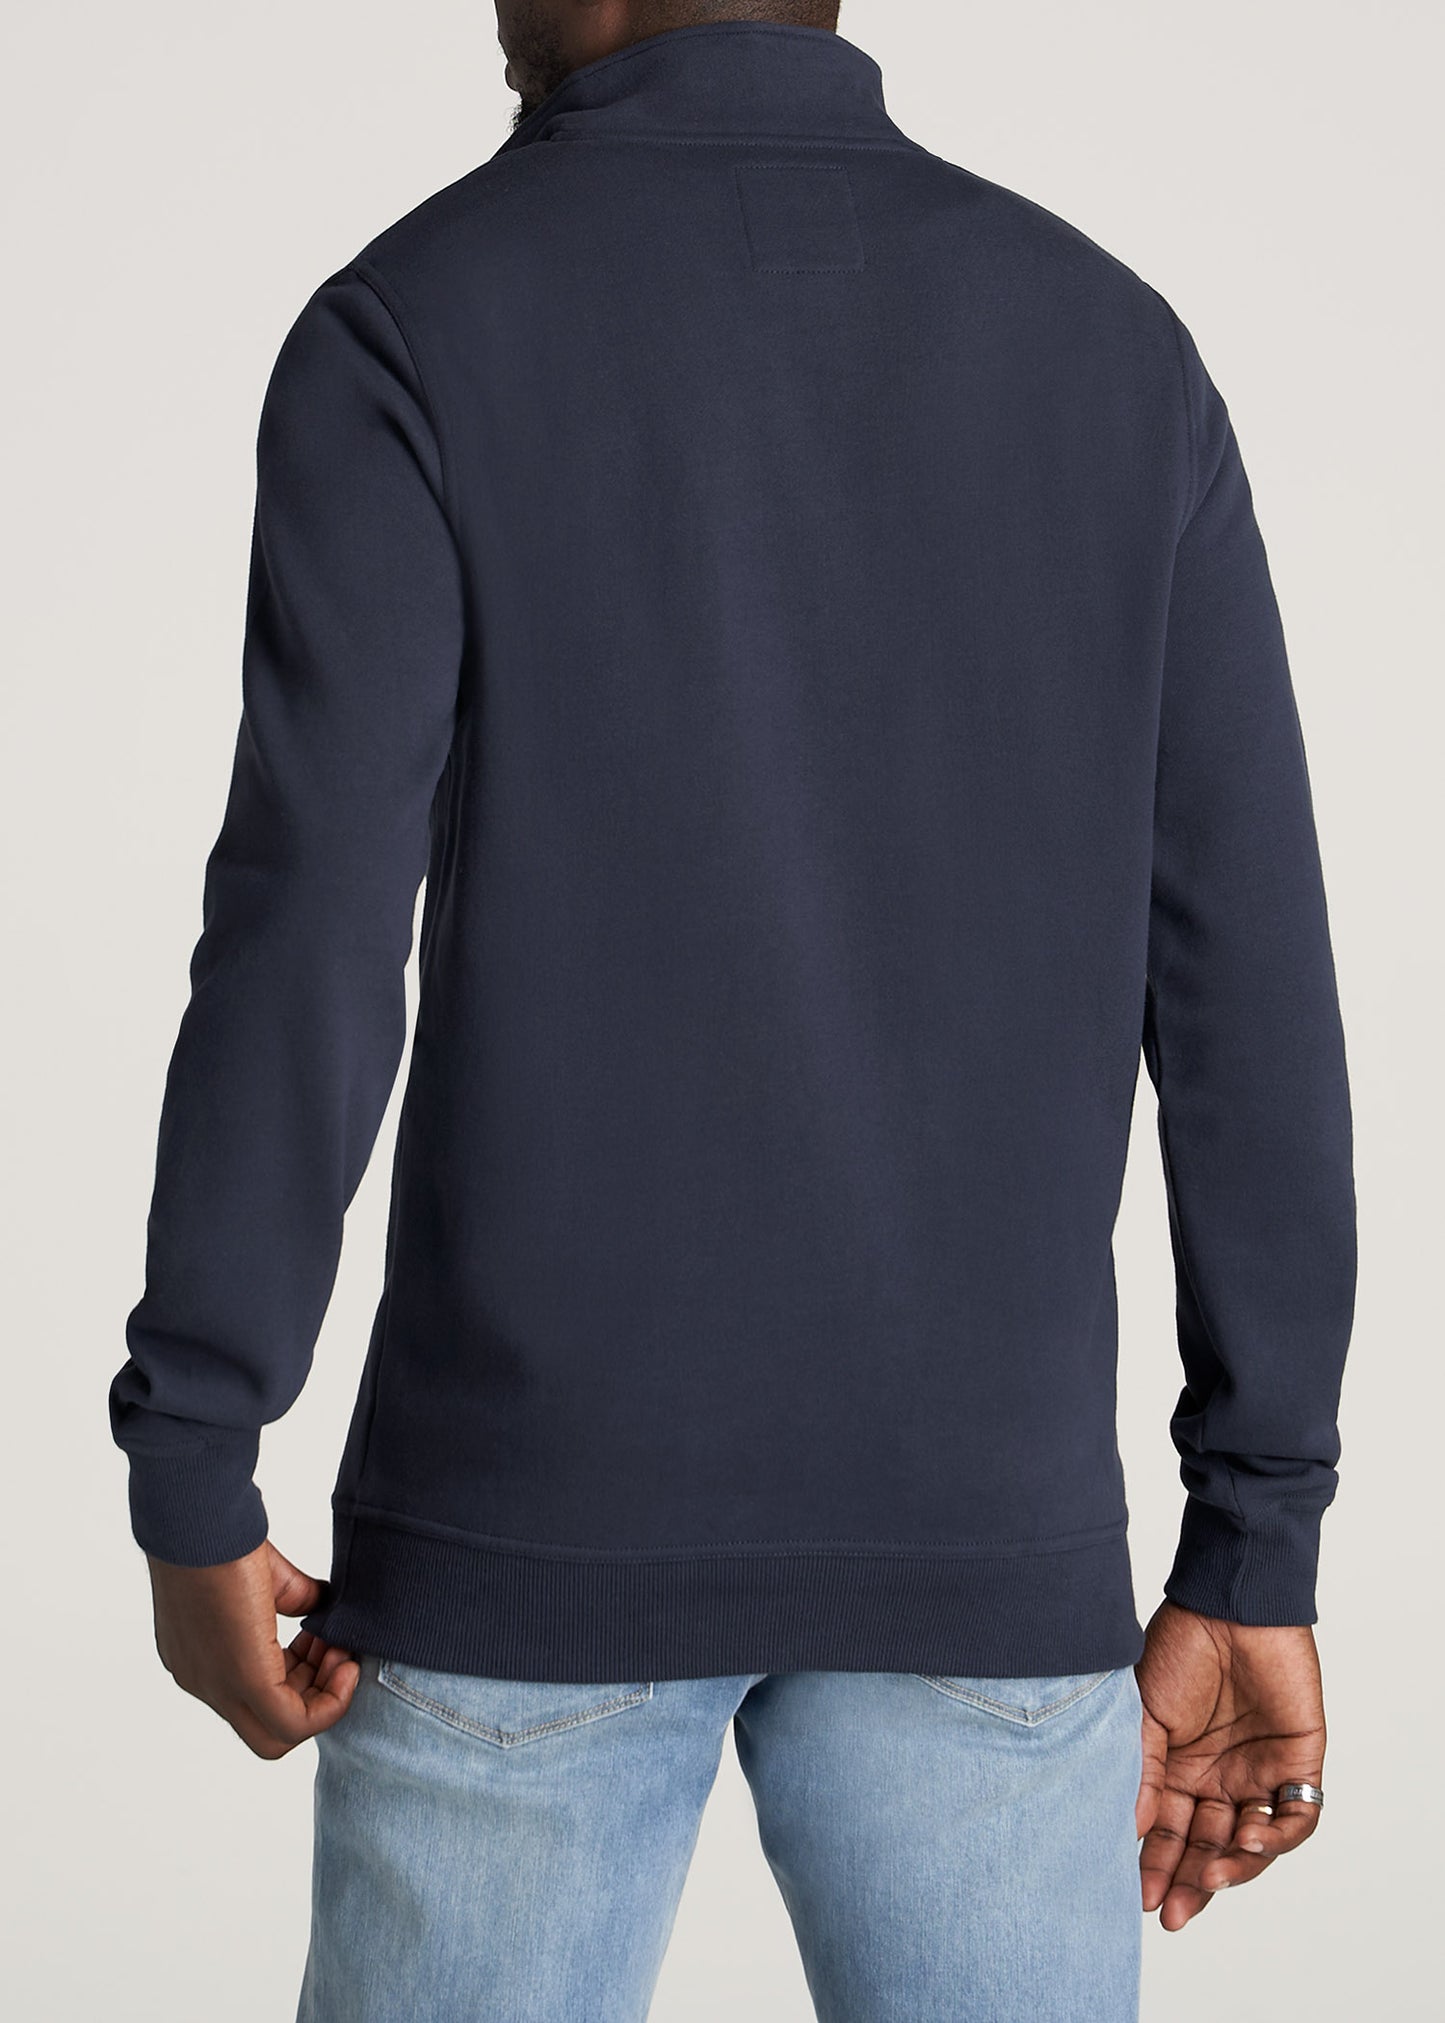 Men's Half Zip Fleece Sweater - All In Motion™ Airway Blue S